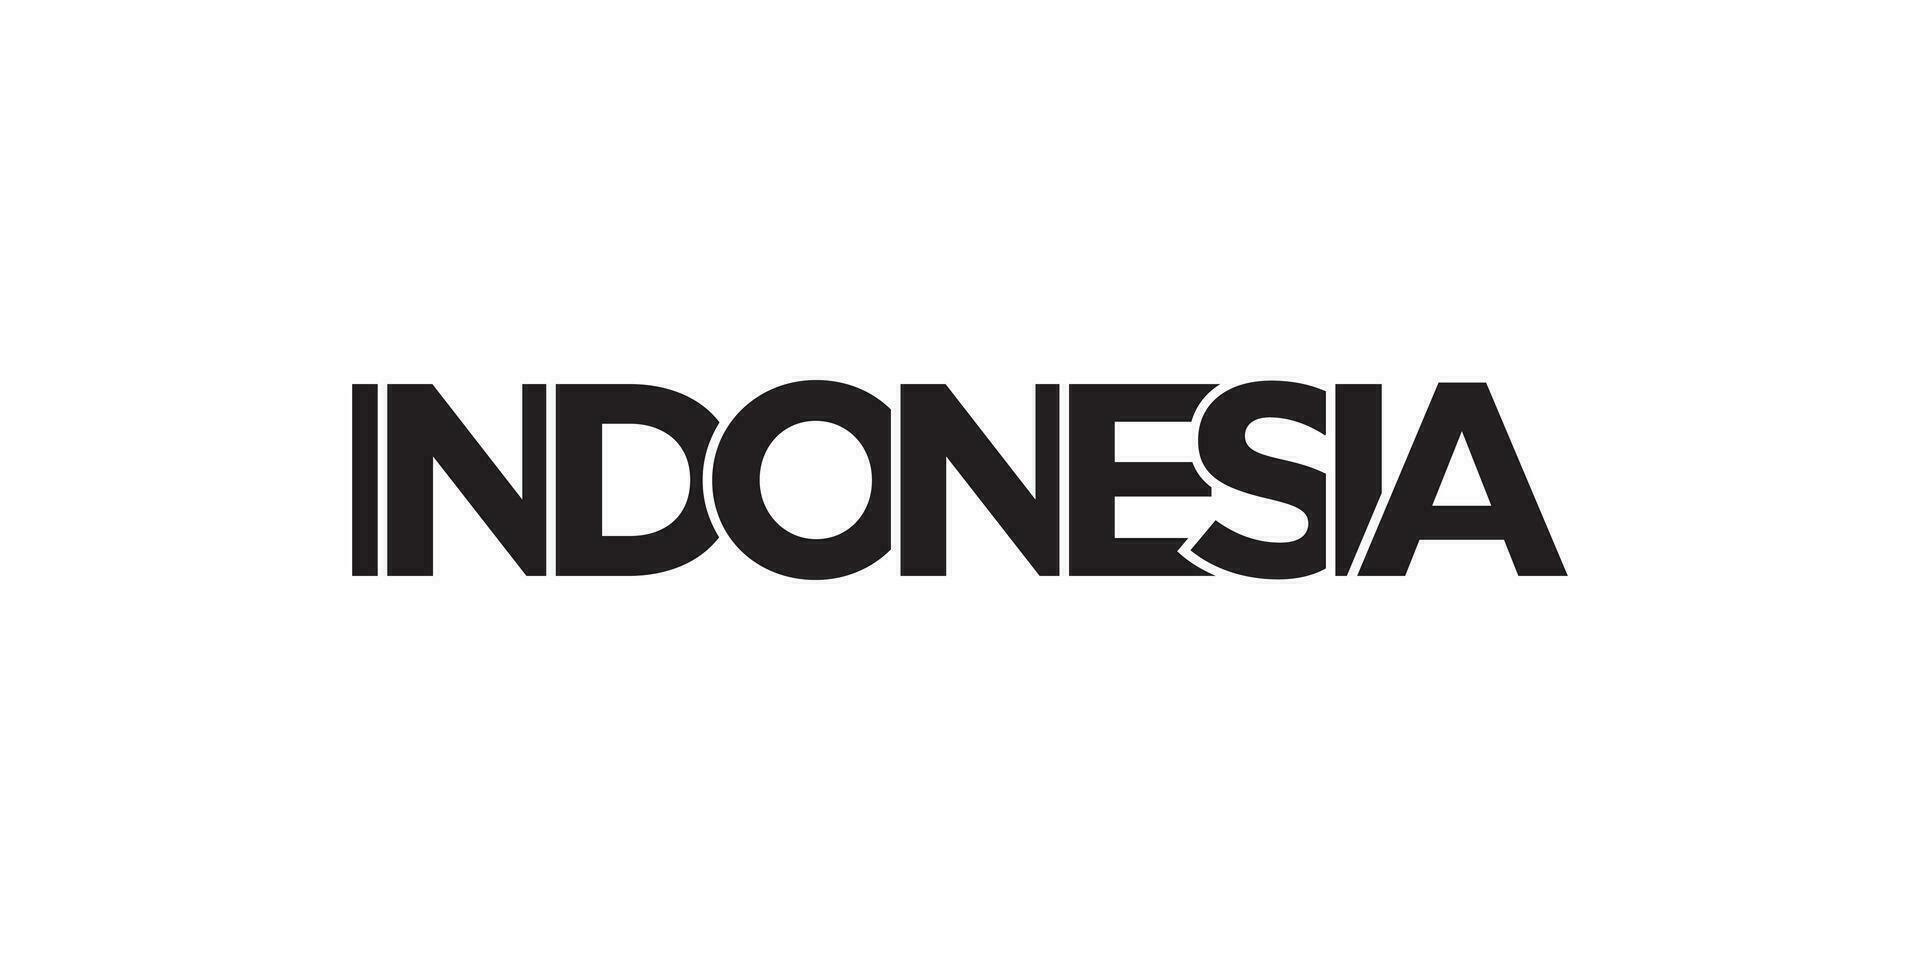 Indonésie emblème. le conception Caractéristiques une géométrique style, vecteur illustration avec audacieux typographie dans une moderne Police de caractère. le graphique slogan caractères.